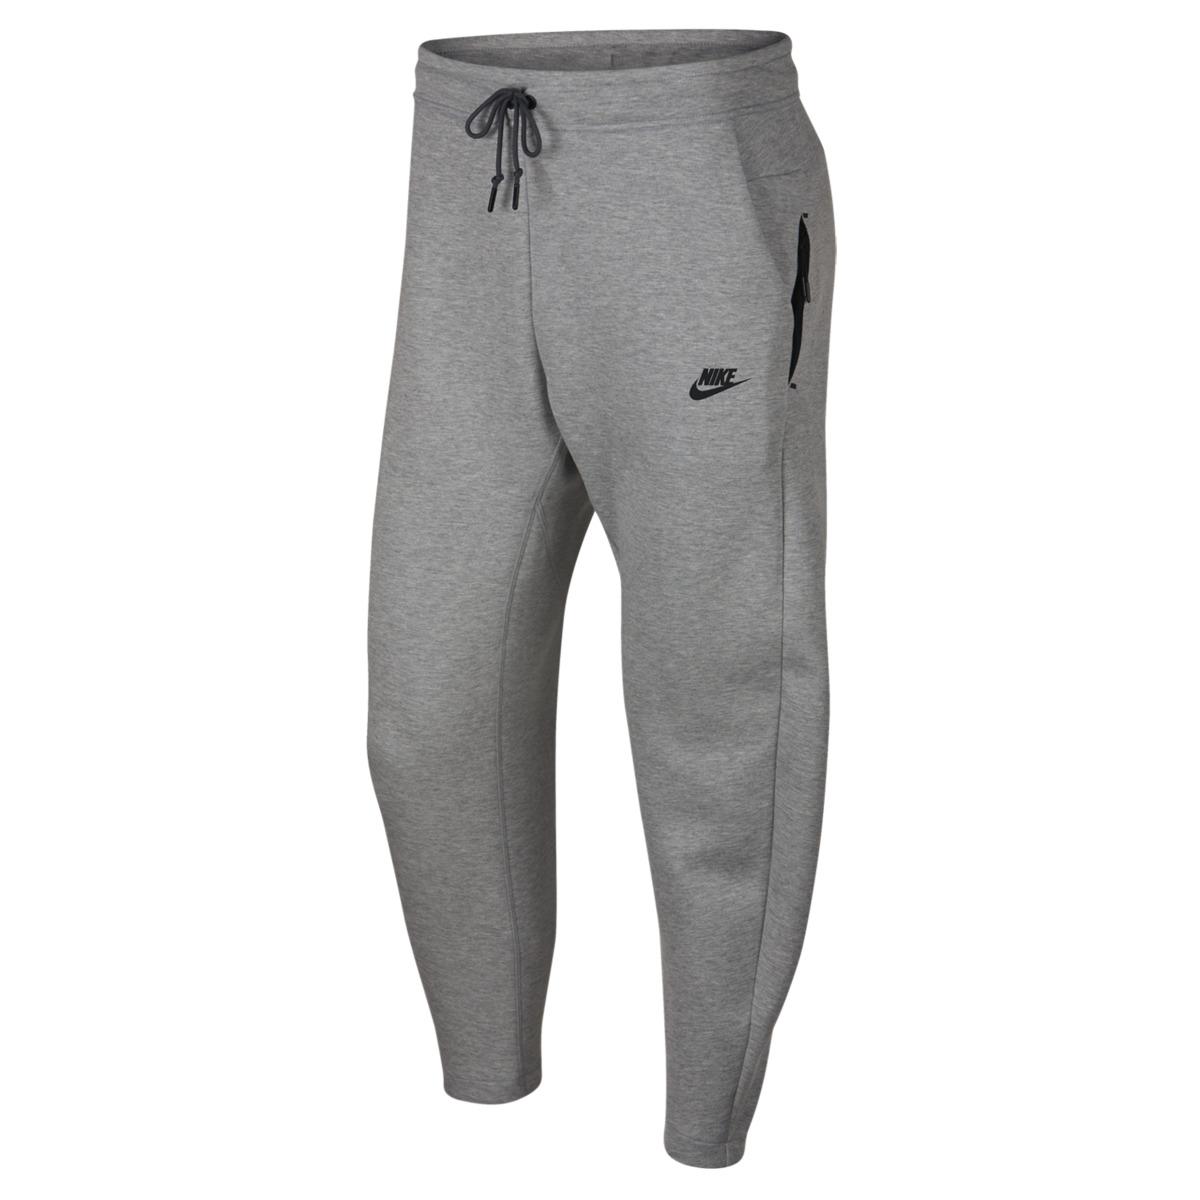 Nike Sportswear Tech Fleece Trousers in Grey (Gray) for Men - Lyst